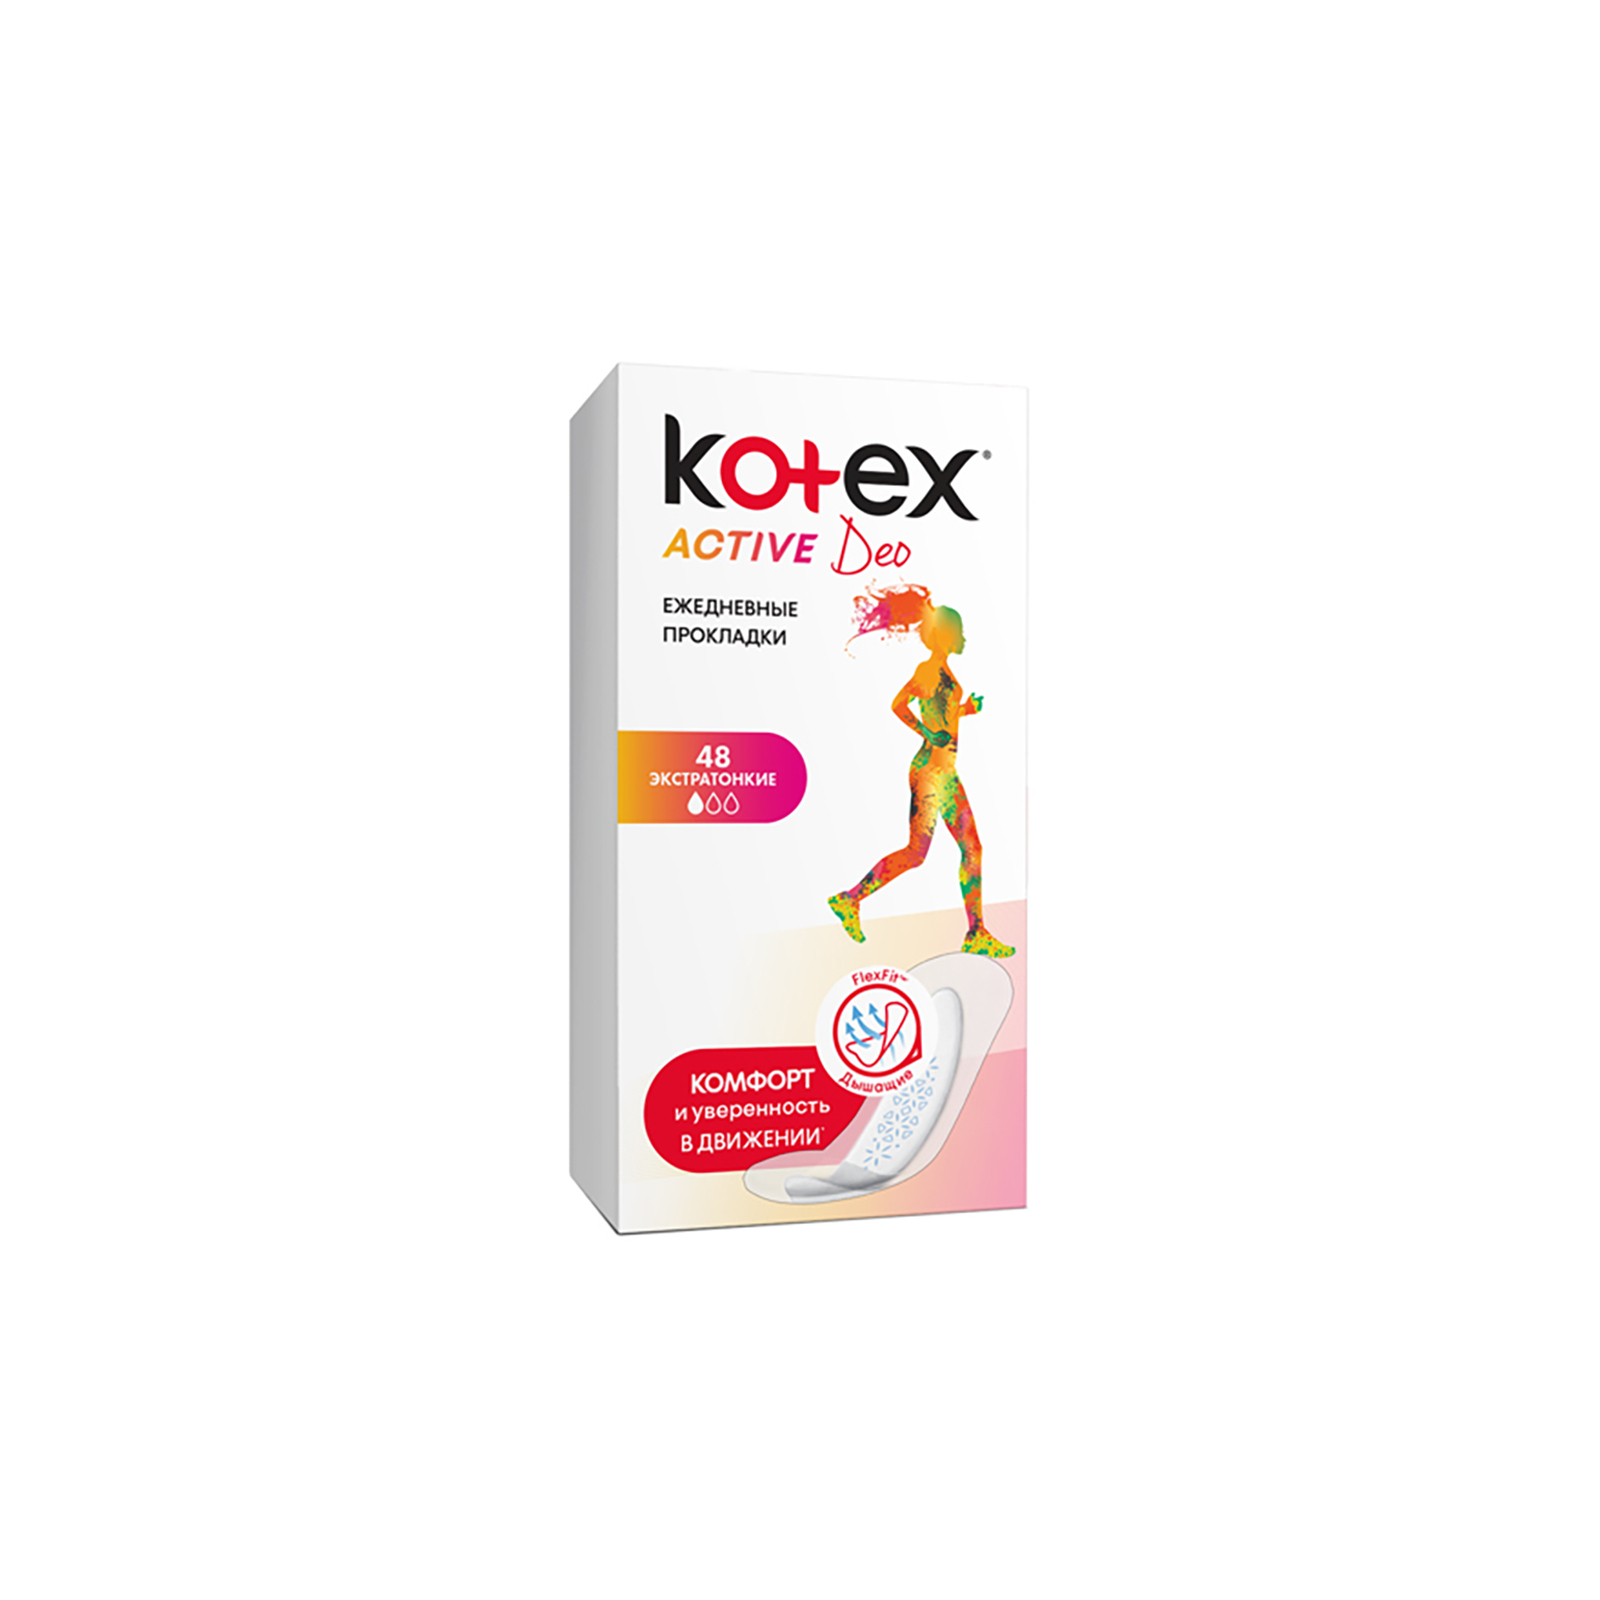 Ежедневные прокладки Kotex Active Deo Extra Thin 48 шт. (5029053547886) изображение 2